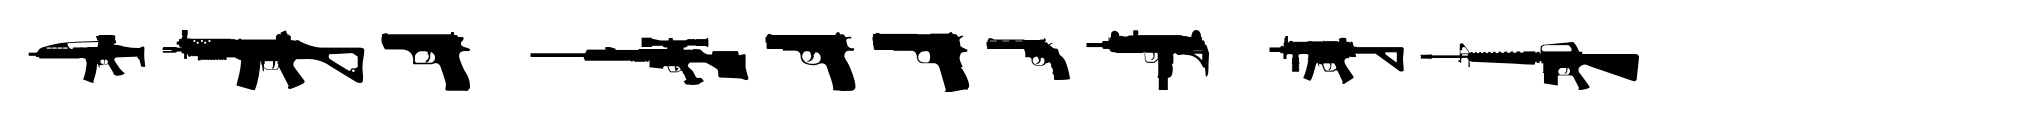 Gun Smith OT image